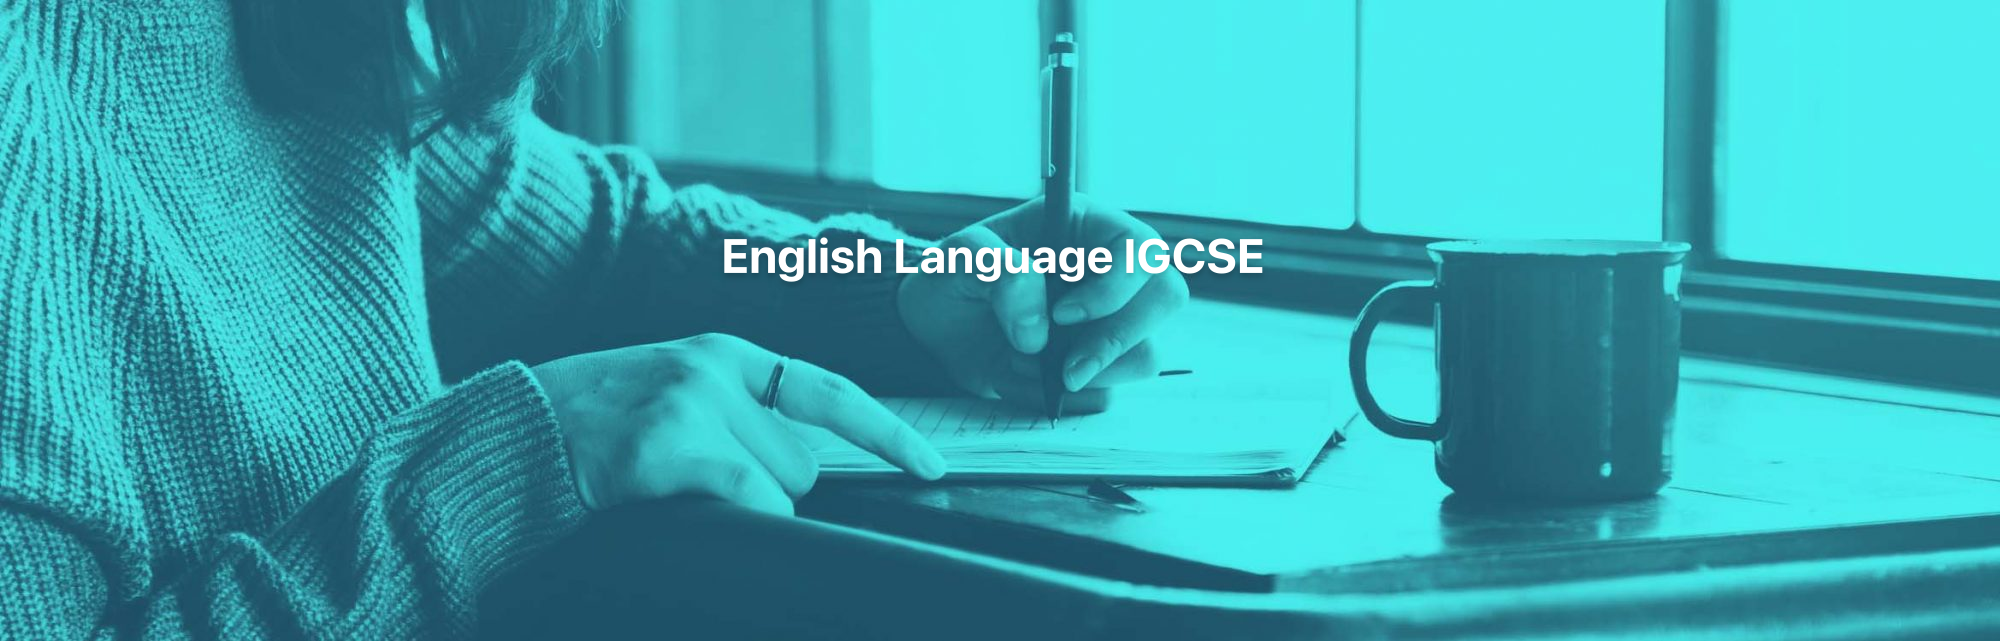 English Language IGCSE Distance Learning Course by Oxbridge